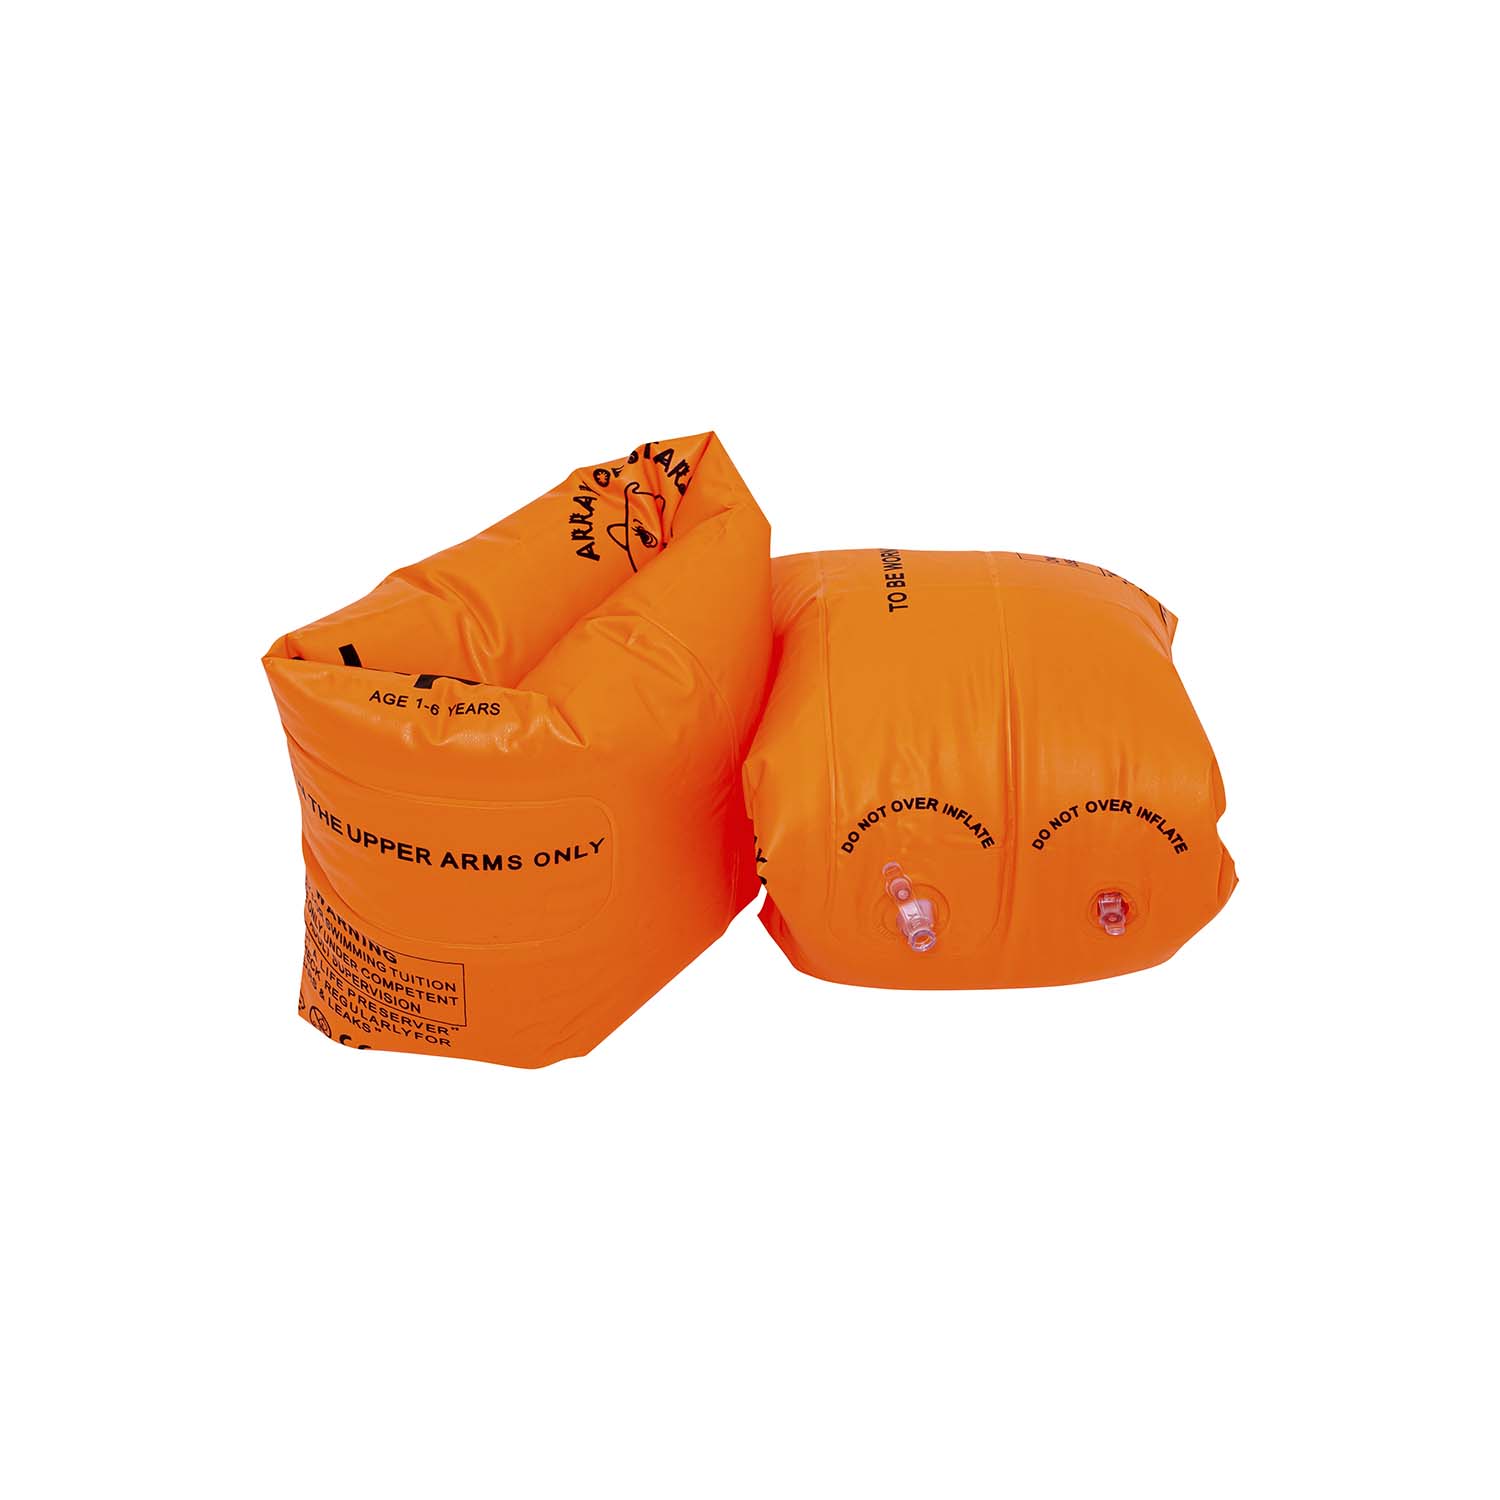 Нарукавники надувные Solmax оранжевые SM06984